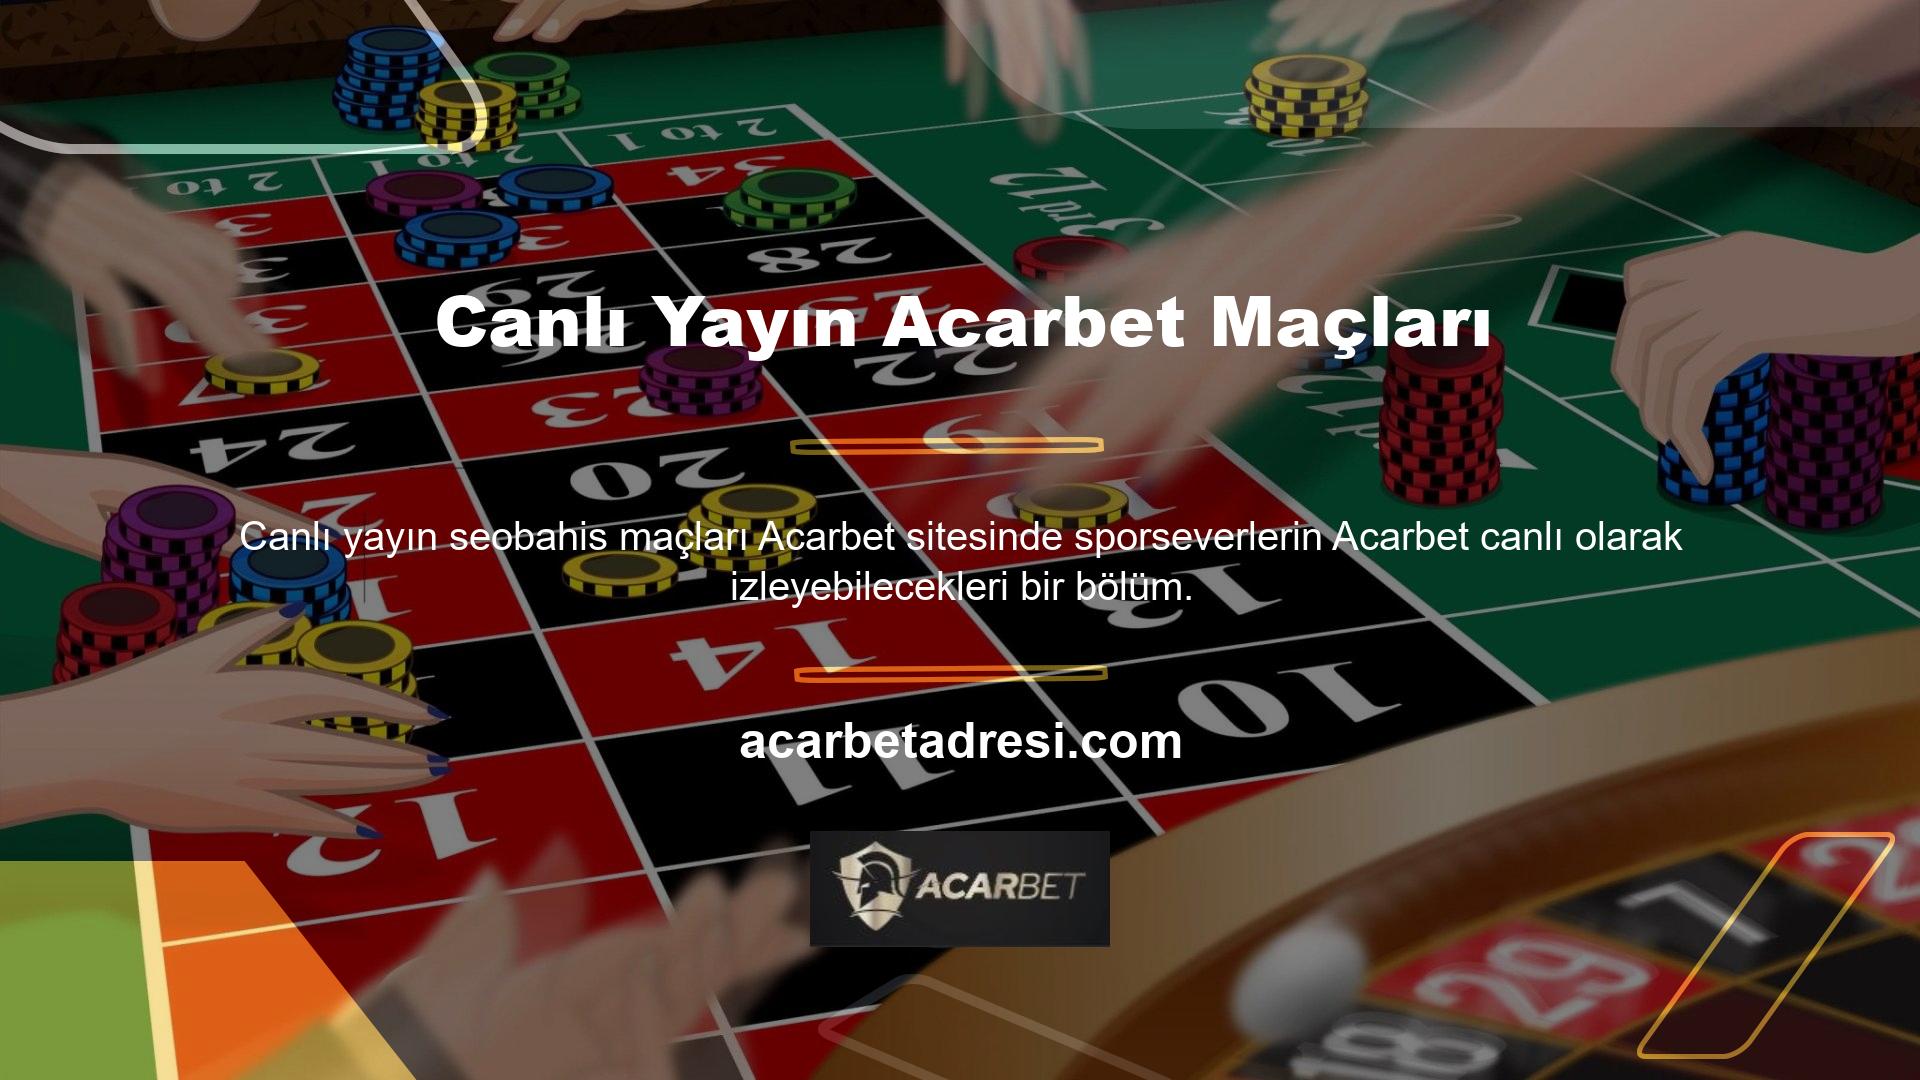 Acarbet, spor karşılaşmalarını hiçbir karşılık beklemeden canlı olarak yayınlayan sitelerden biridir